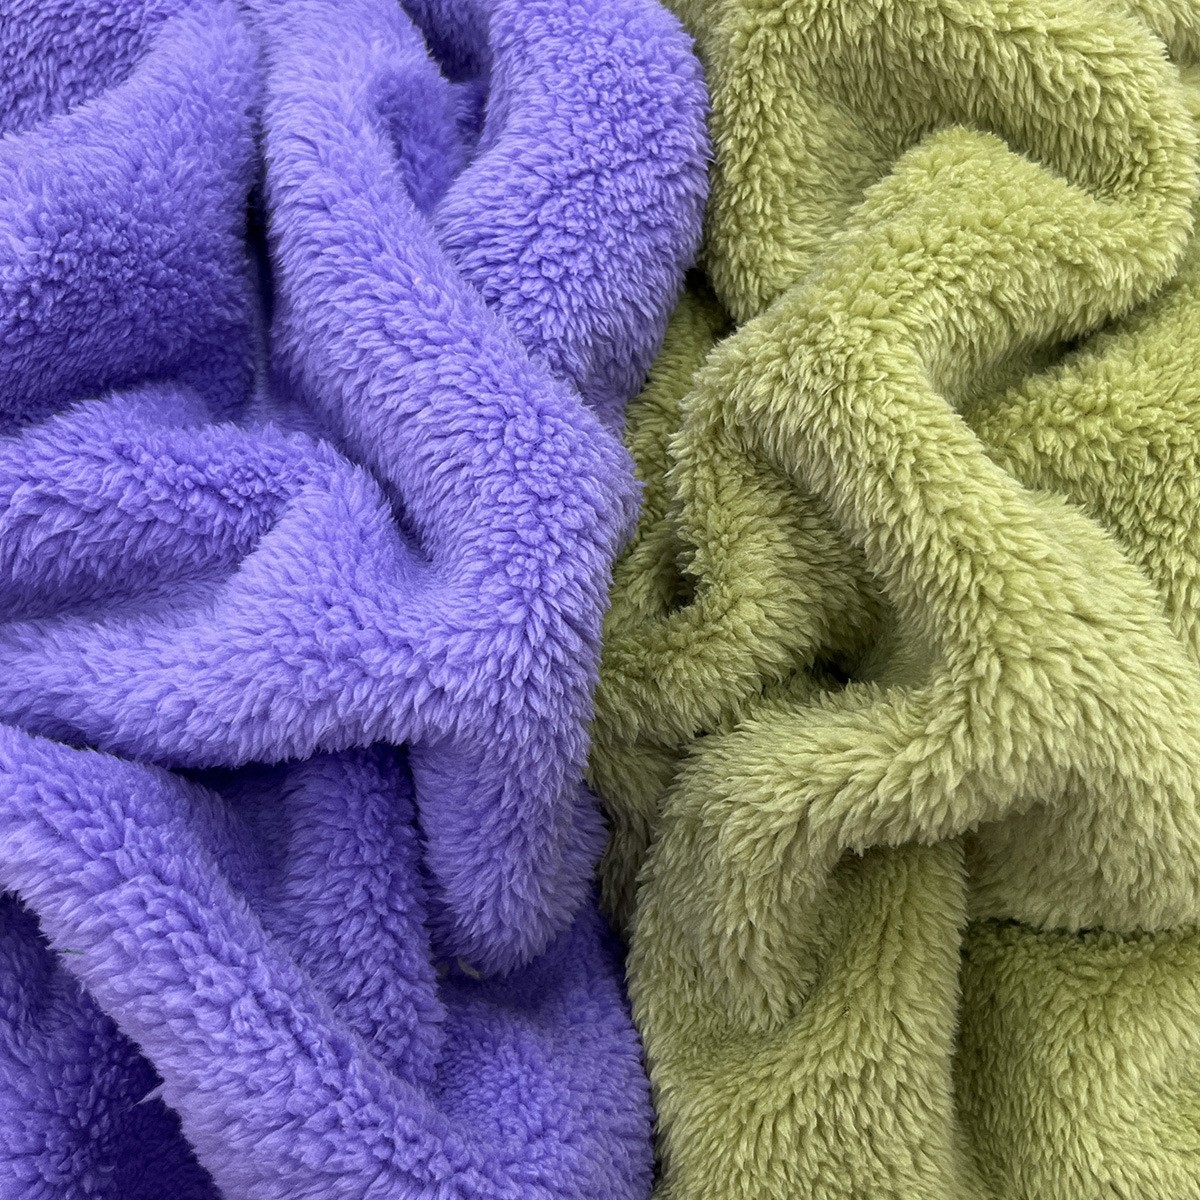 素色舒棉绒 棉花绒面料   毯子沙发抱枕睡衣玩具包包家纺服装布料